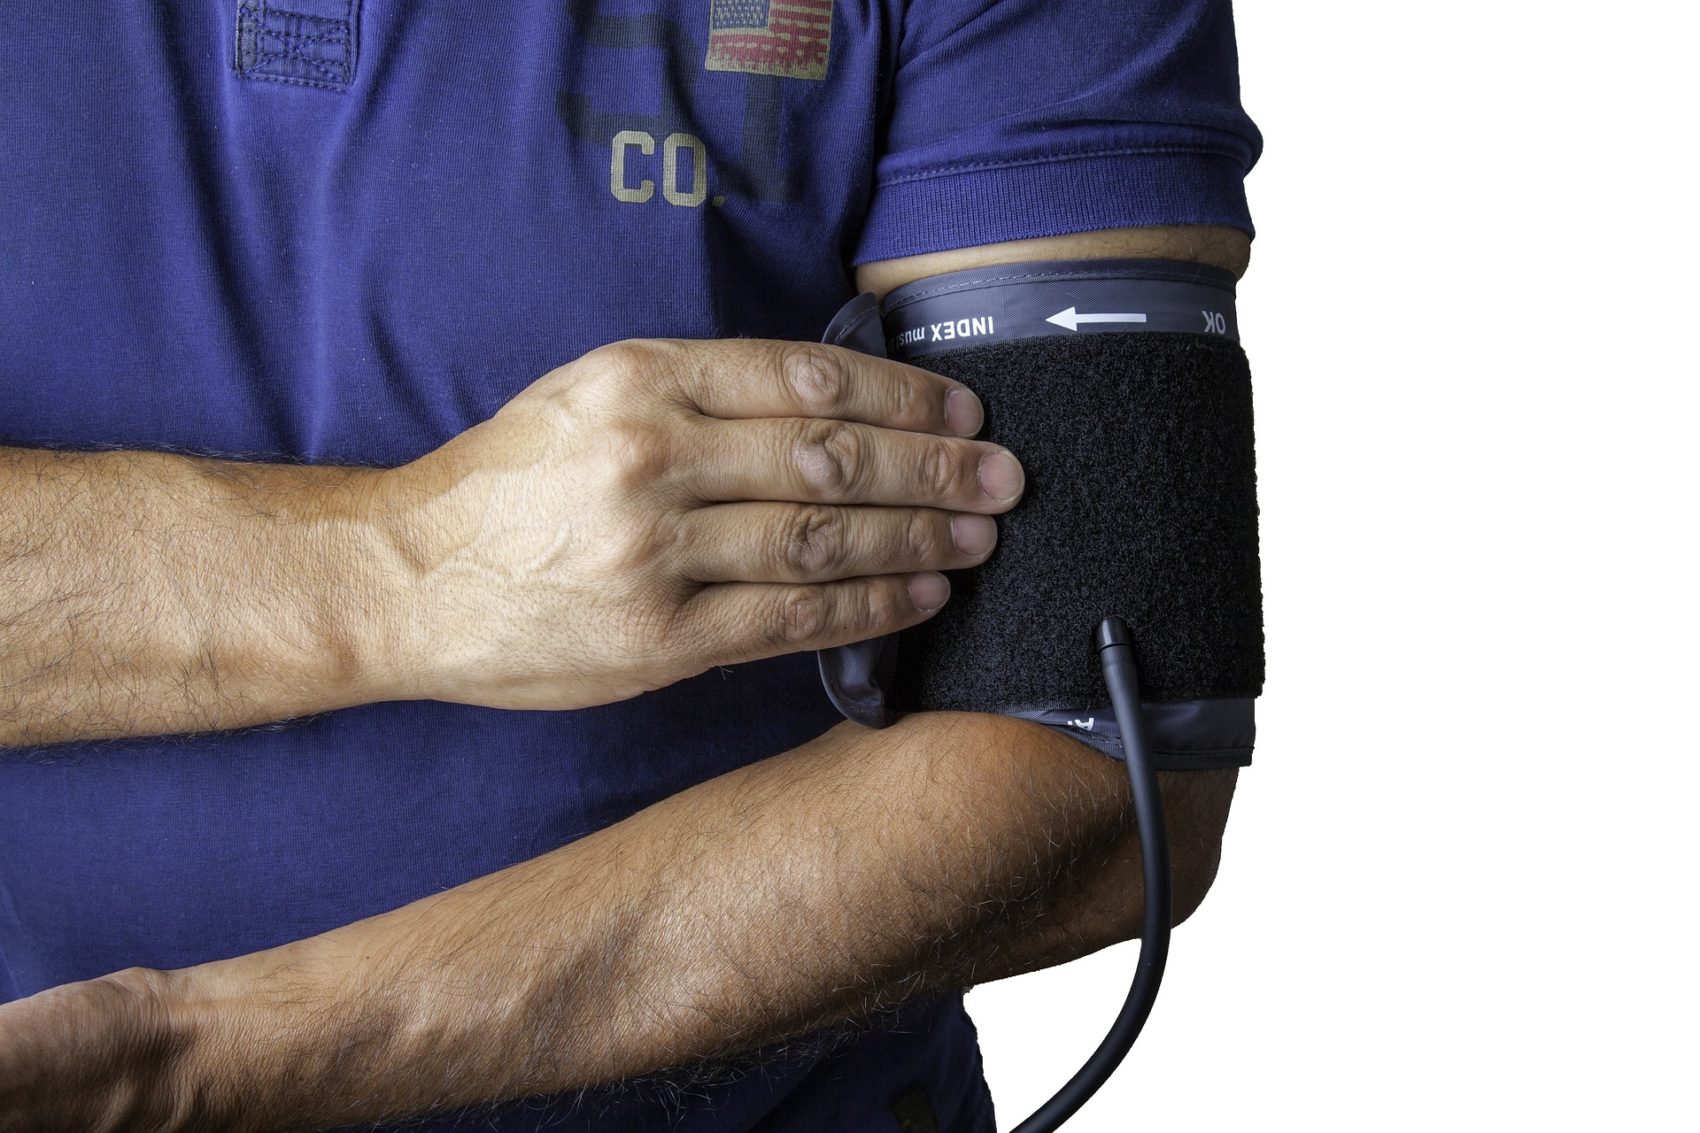 Bei der Gesundheitsveranstaltung kann sich jeder kostenlos einer Gefäß-, Blutdruck- und Blutzuckermessung unterziehen.